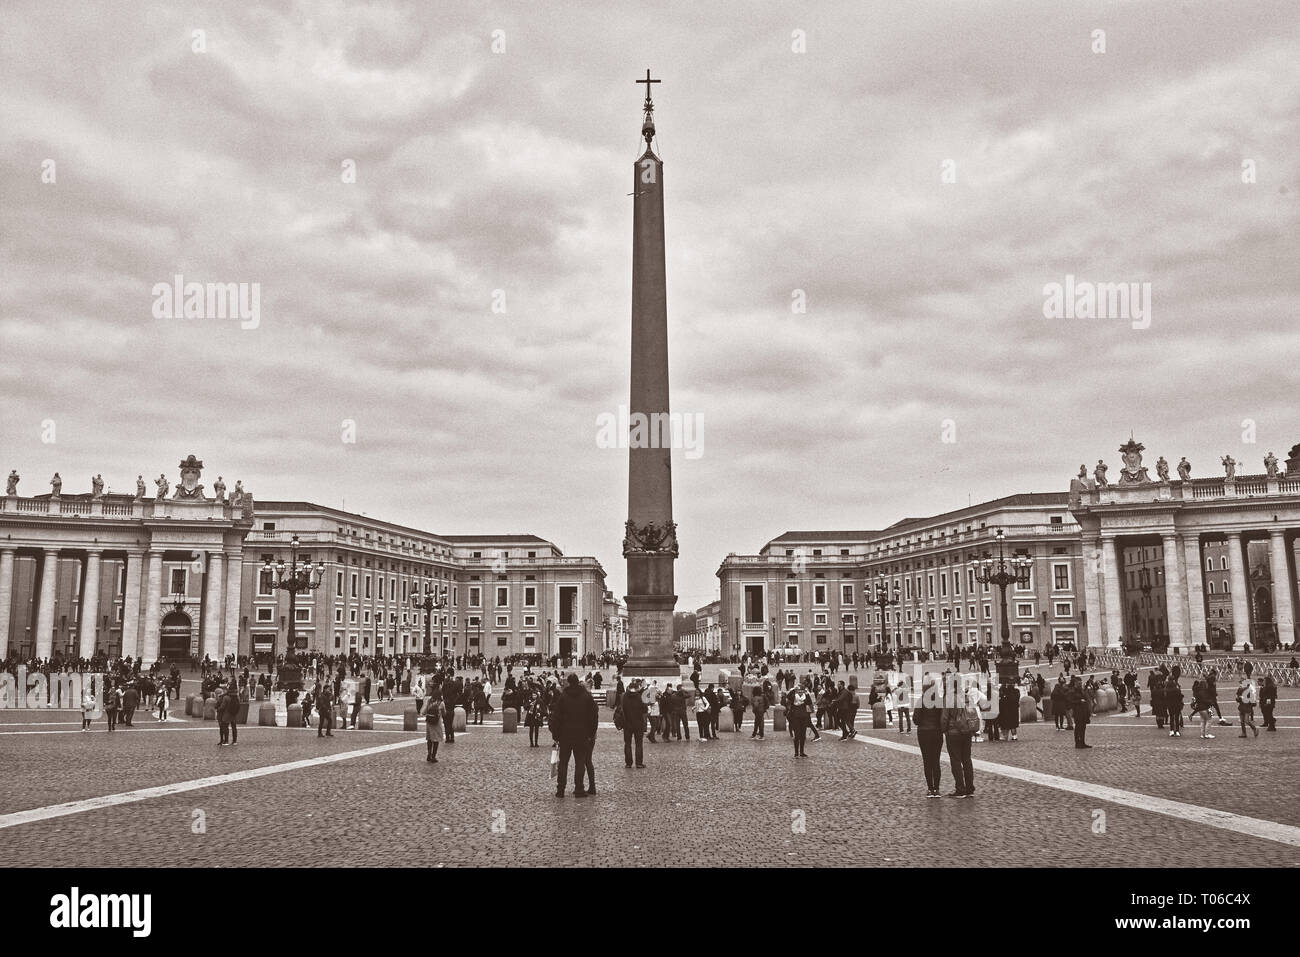 Italia, Roma, 19 febbraio/ 2018, Piazza San Pietro, i turisti in piazza, la fotografia in bianco e nero in un giorno nuvoloso Foto Stock